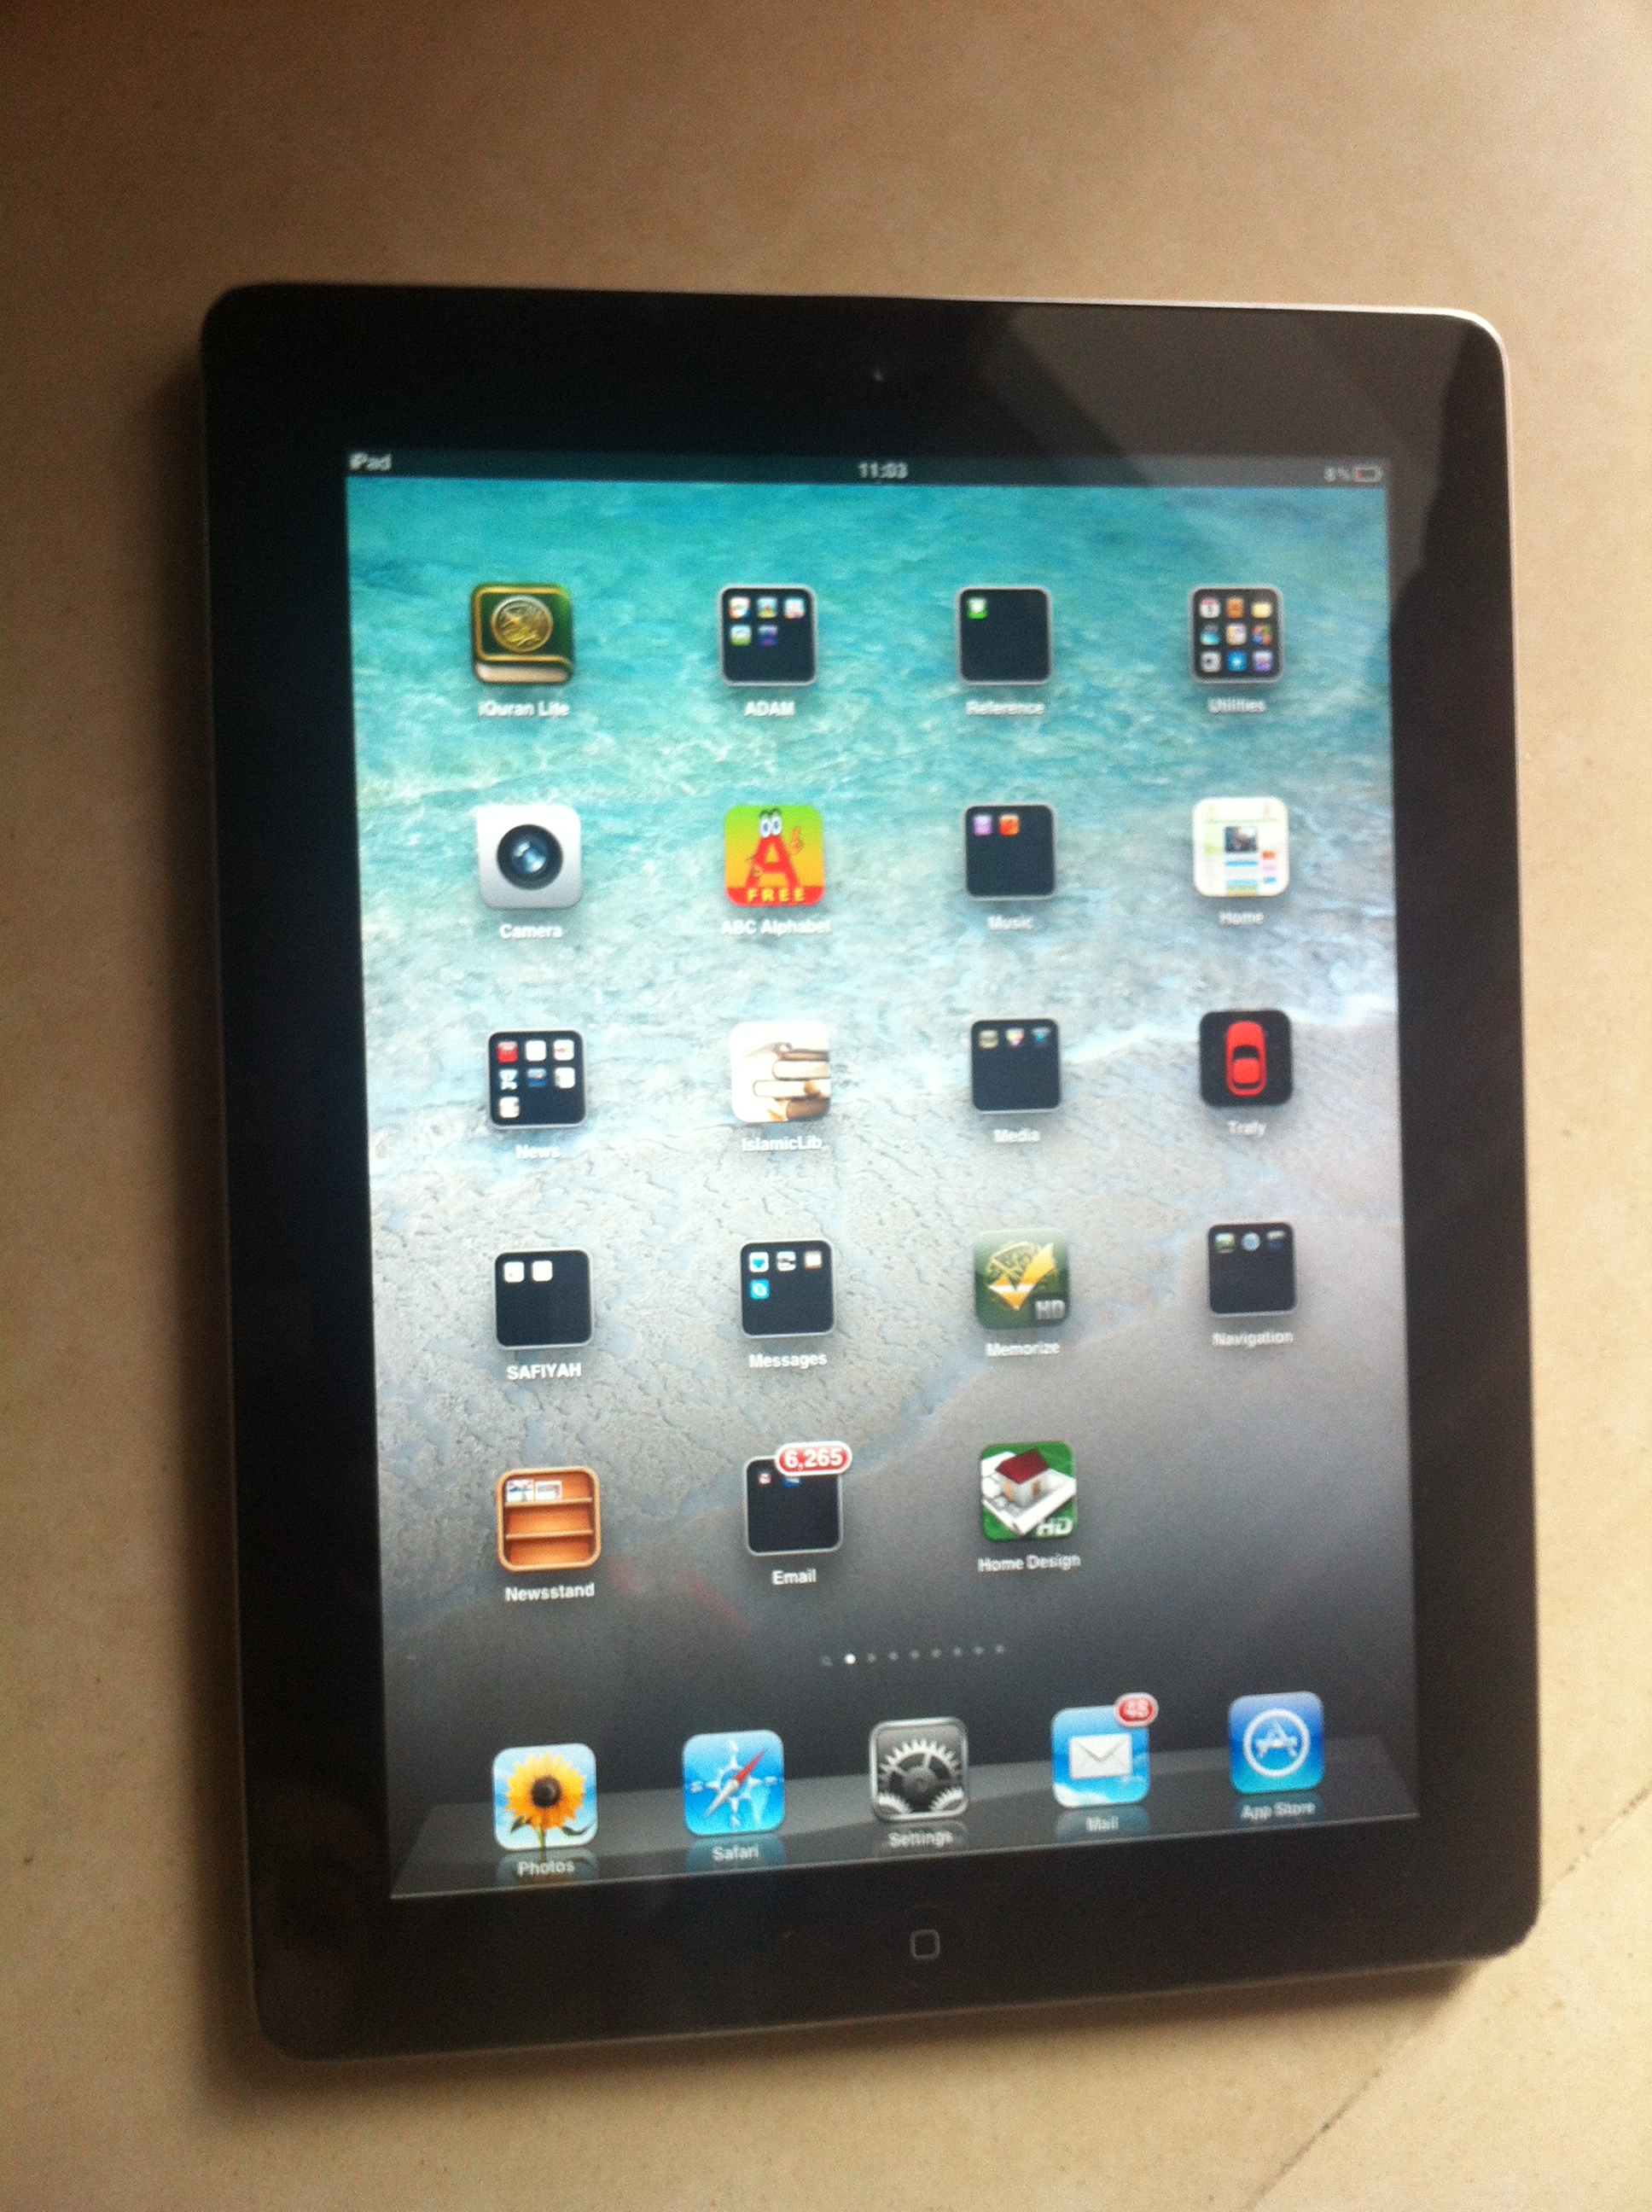 Apple iPad 2 16GB Wi-Fi Black large image 0